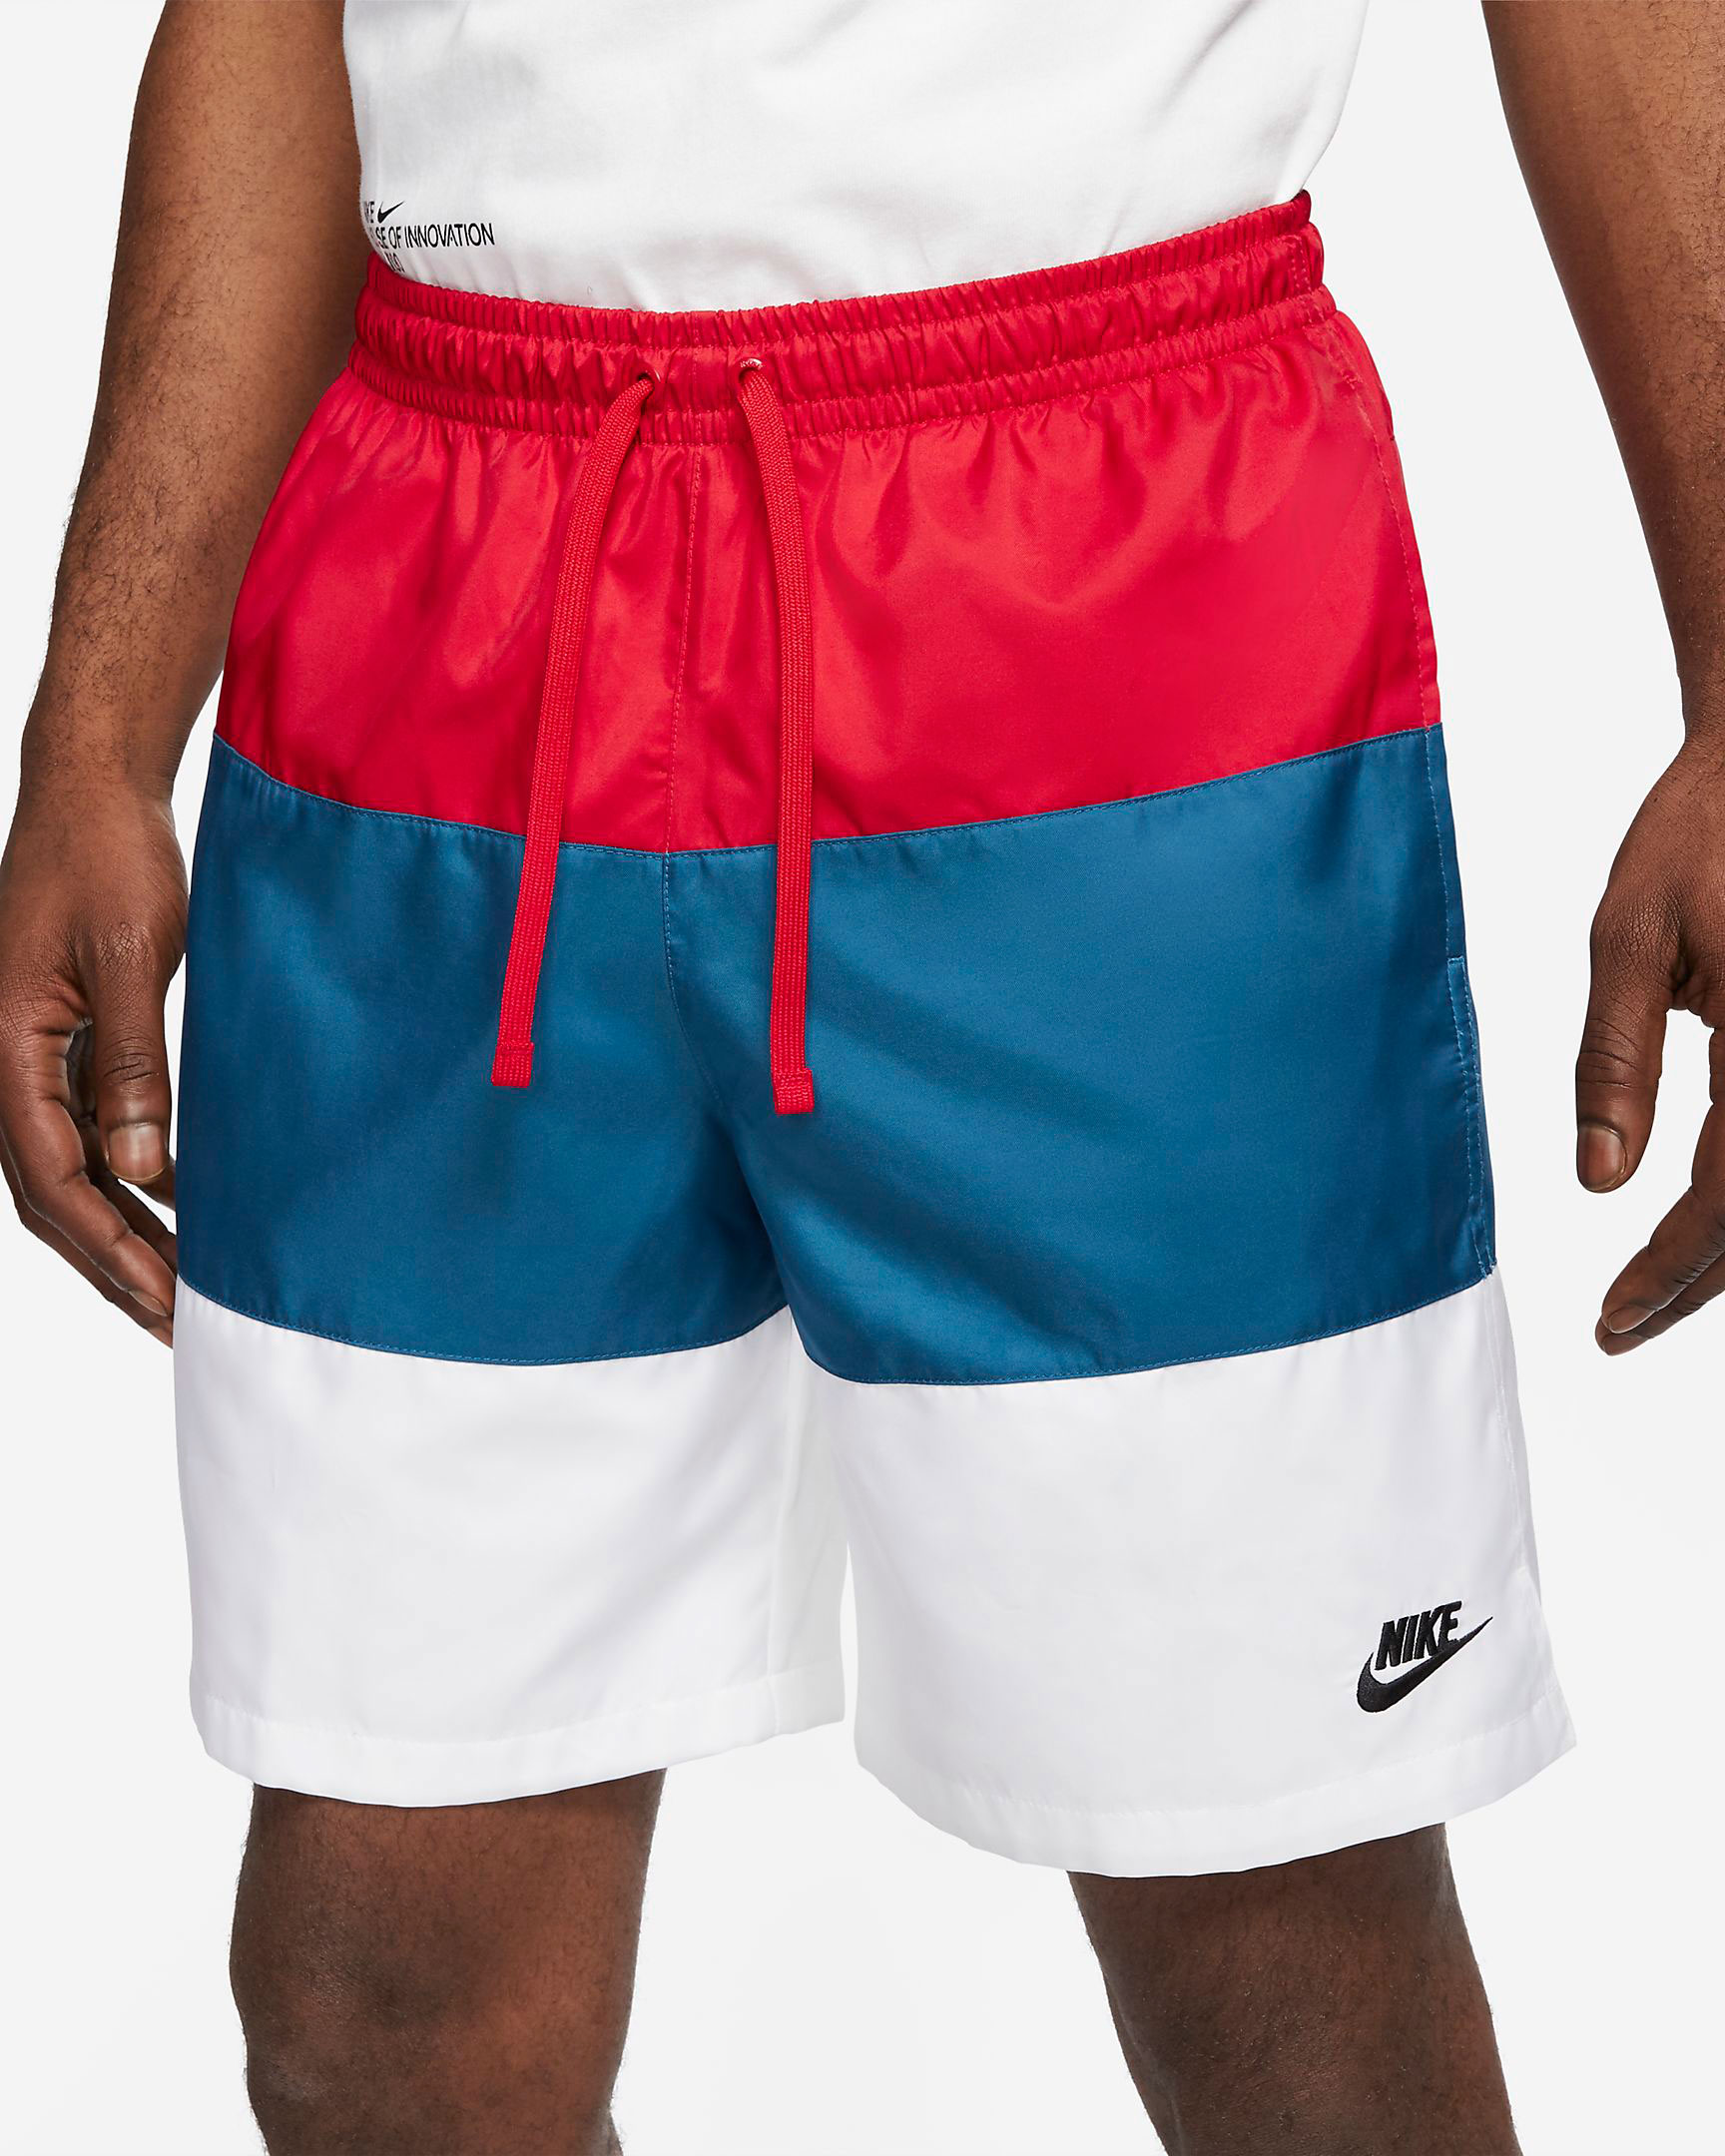 nike-americana-club-red-white-blue-shorts